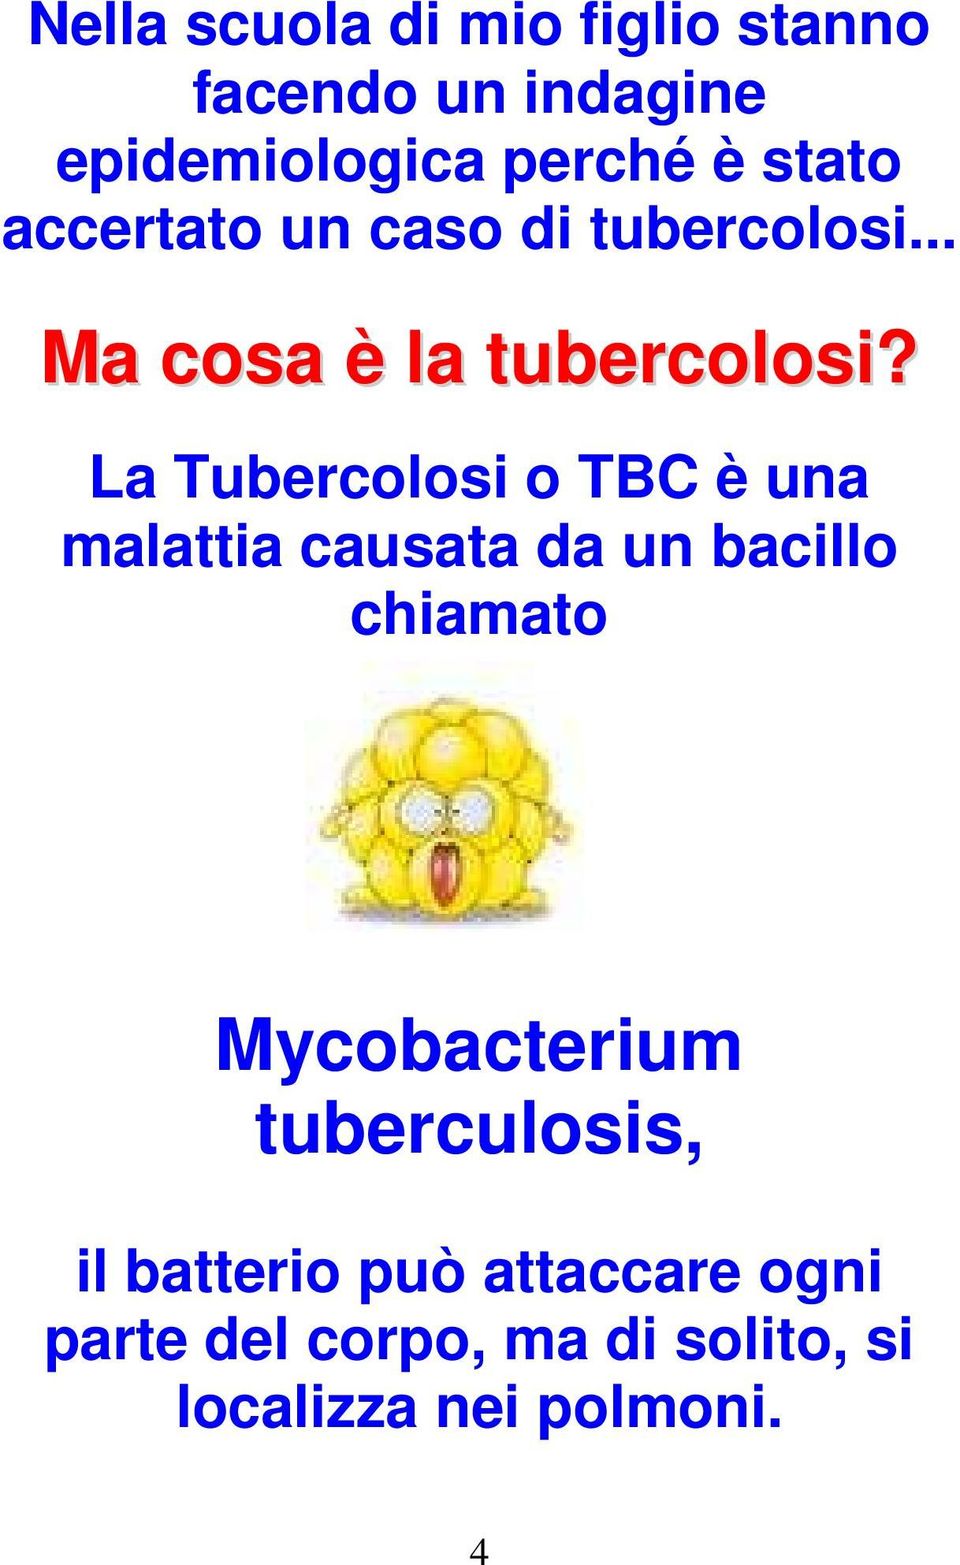 La Tubercolosi o TBC è una malattia causata da un bacillo chiamato Mycobacterium